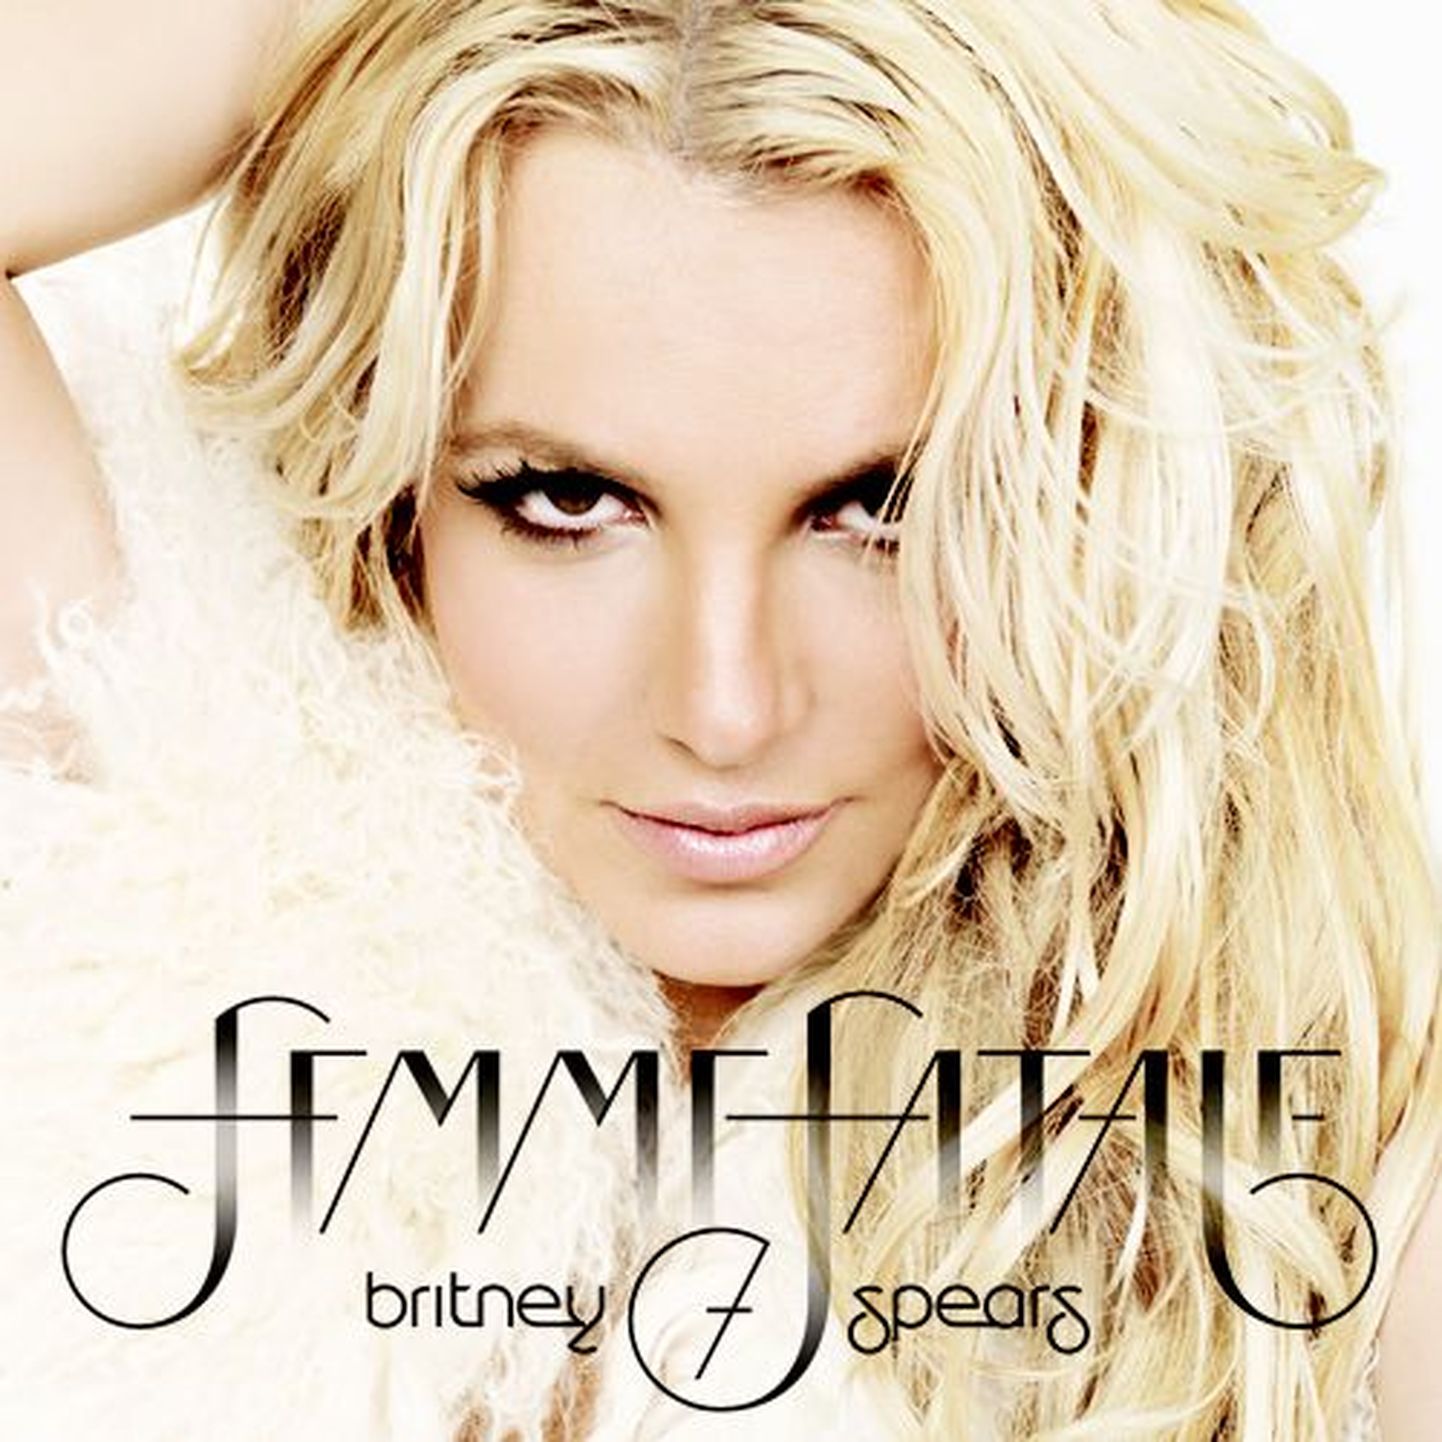 Britney Spears "Femme Fatale"